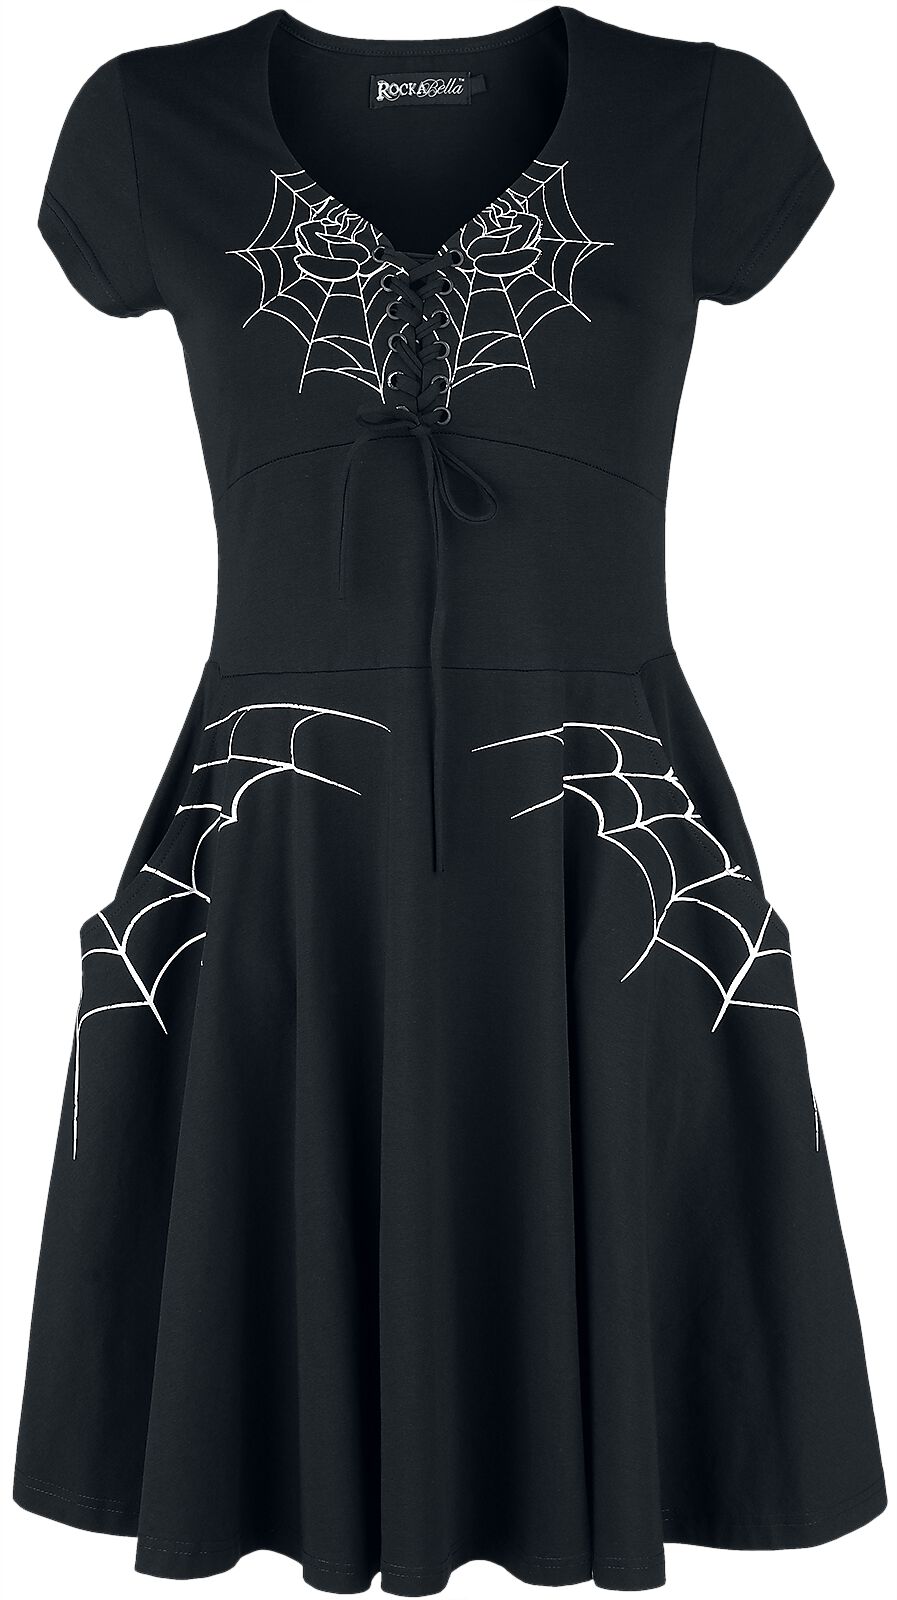 Rockabella Black Widow Dress Kurzes Kleid schwarz weiß in 4XL